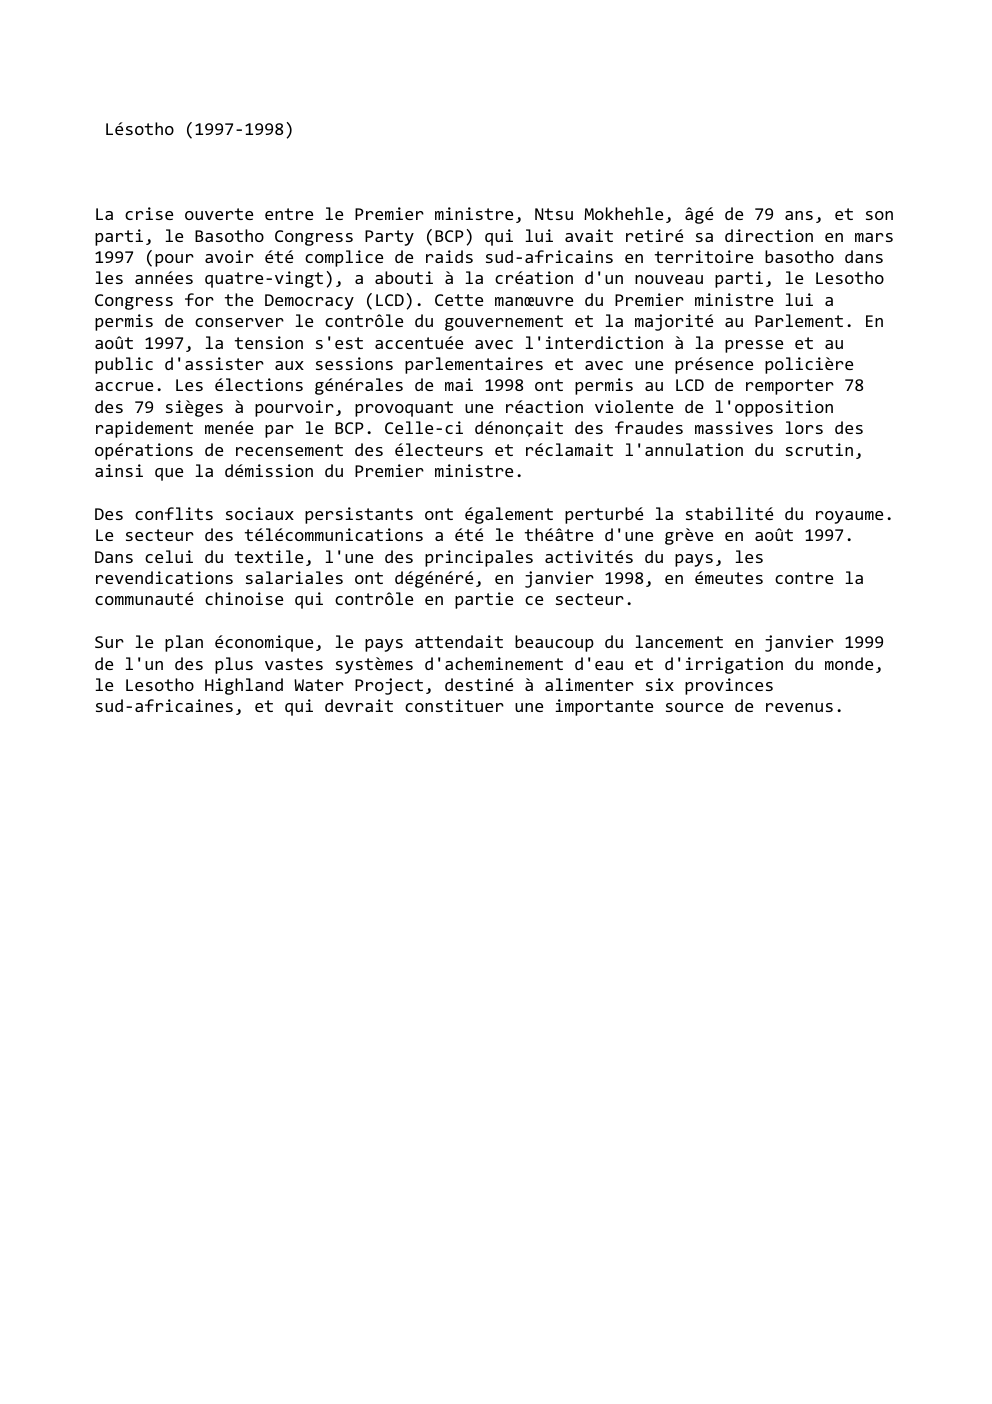 Prévisualisation du document Lésotho (1997-1998)

La crise ouverte entre le Premier ministre, Ntsu Mokhehle, âgé de 79 ans, et so...